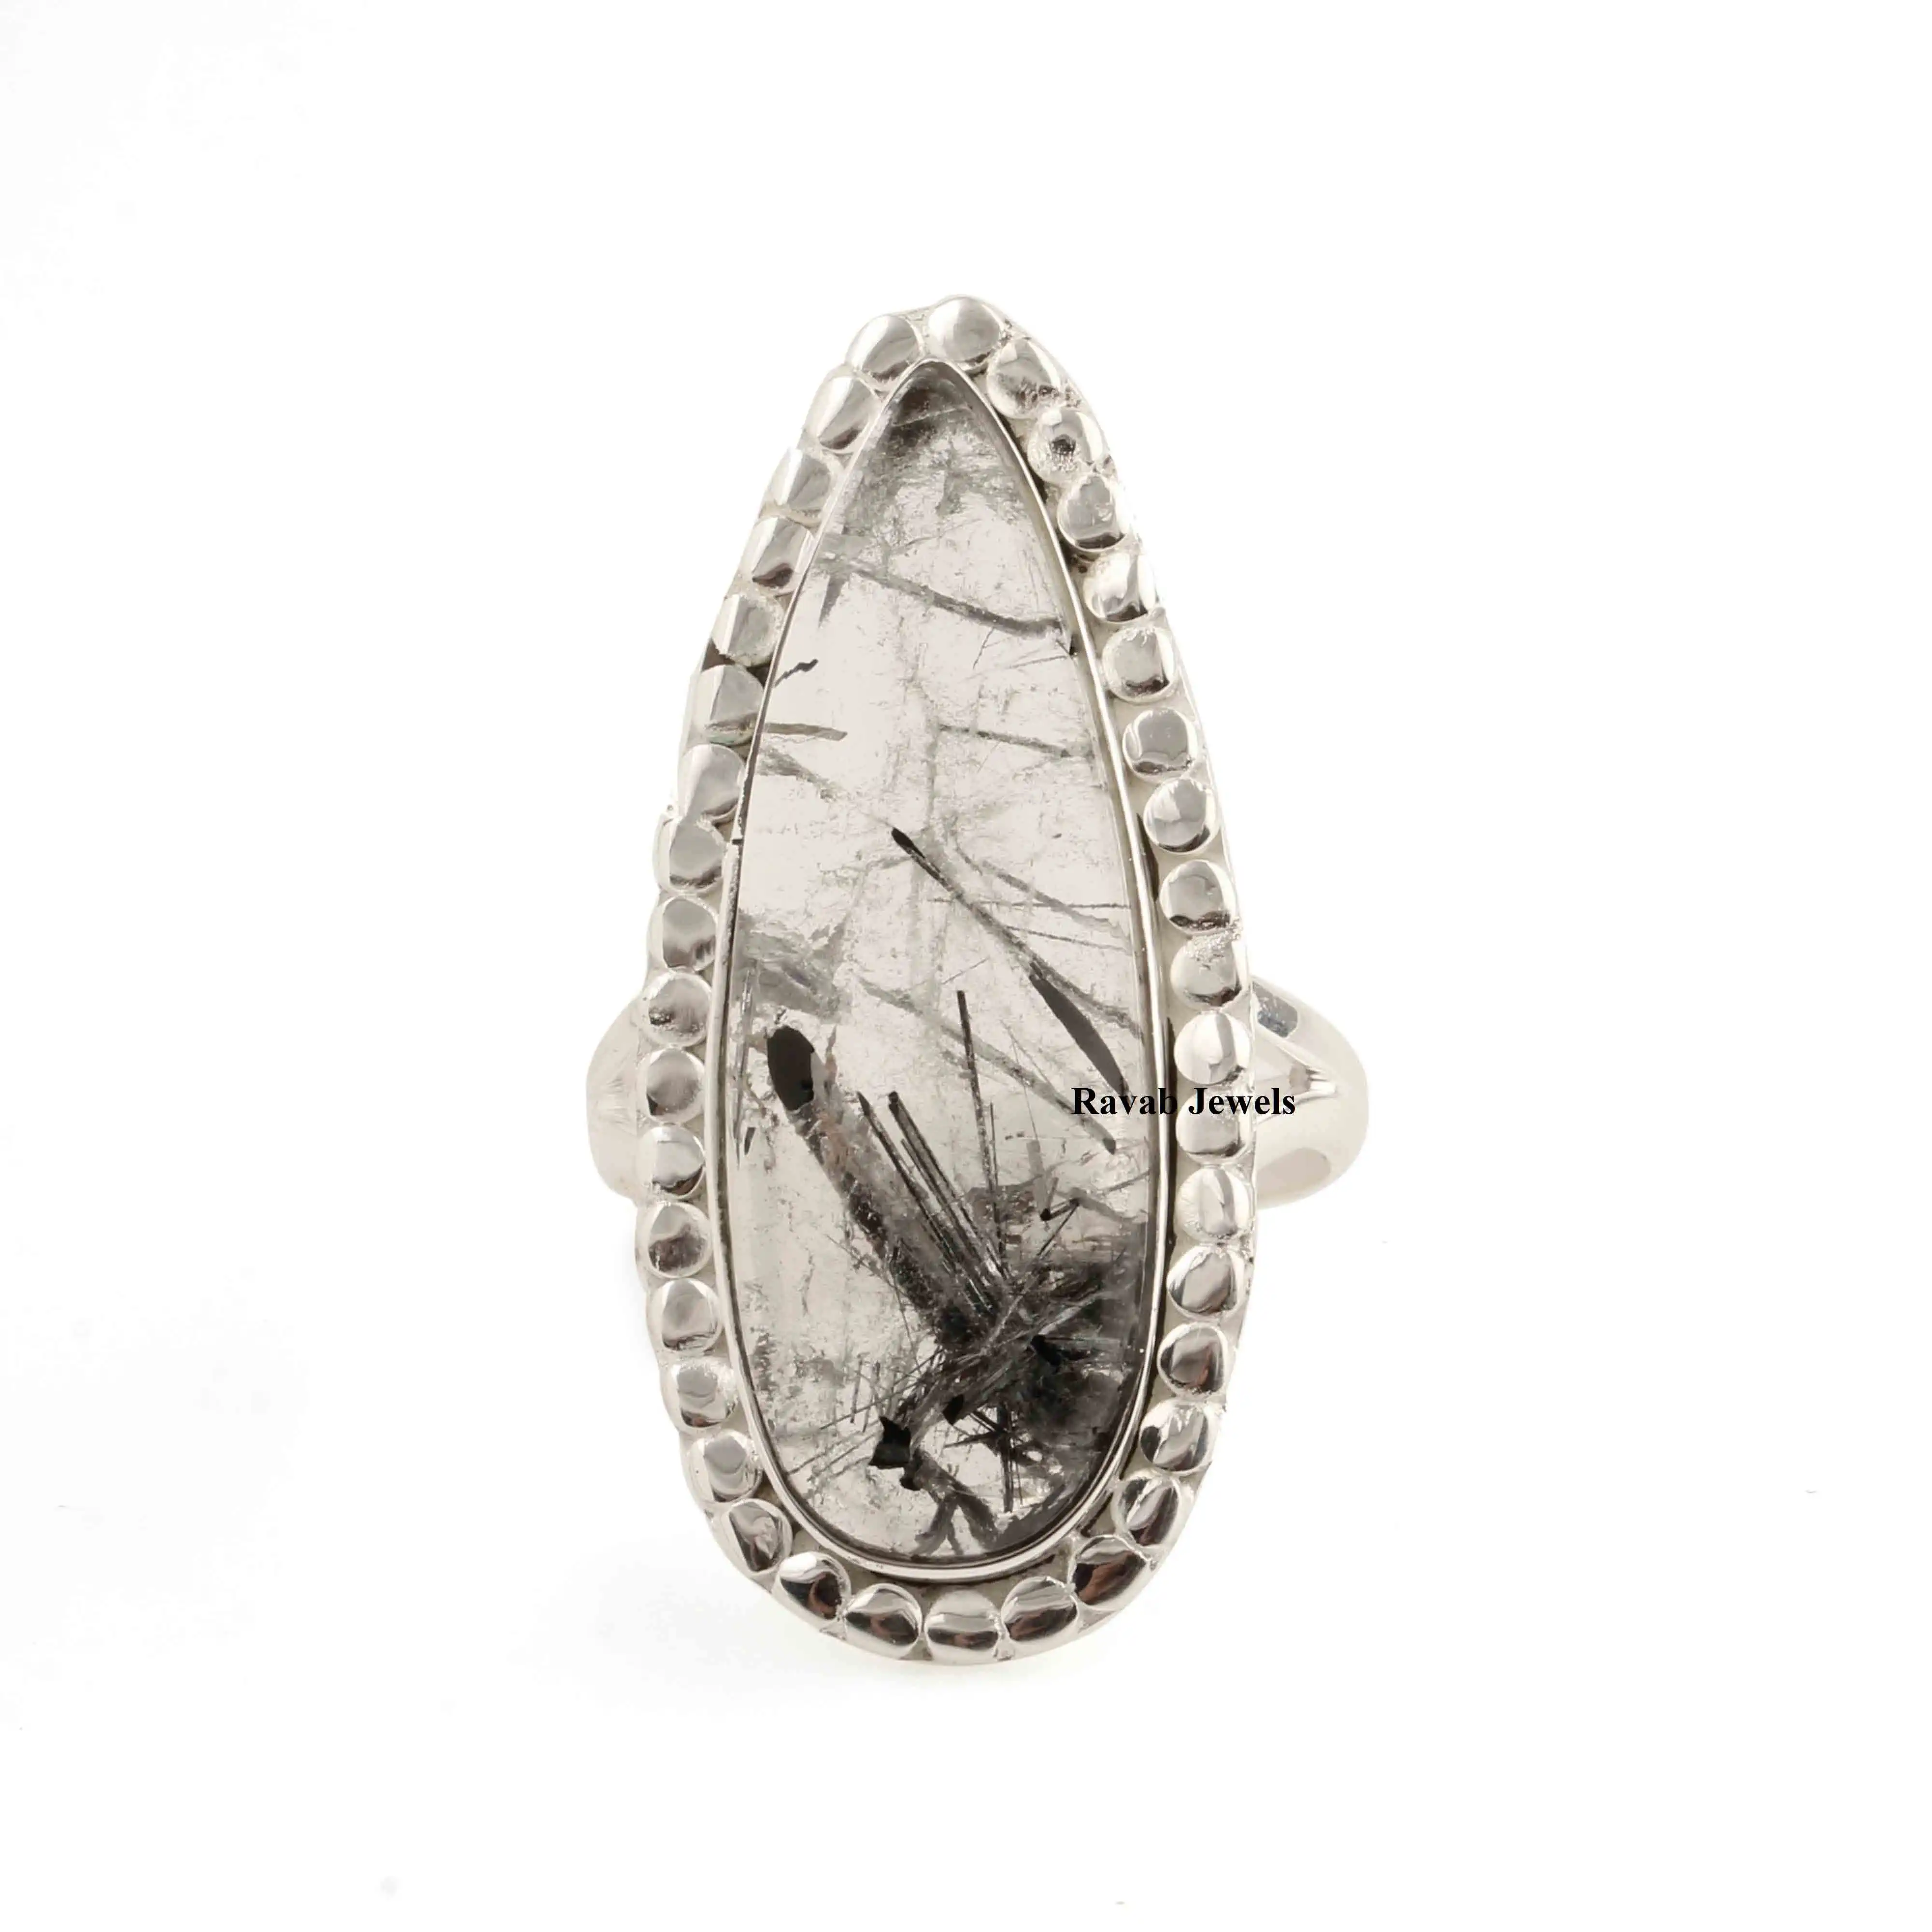 2023 Good Quality Black Rutile Quartz Stone Ring Designer Bezel Setting Gift 925 Sterling Silver Jewelry For Women & Girls